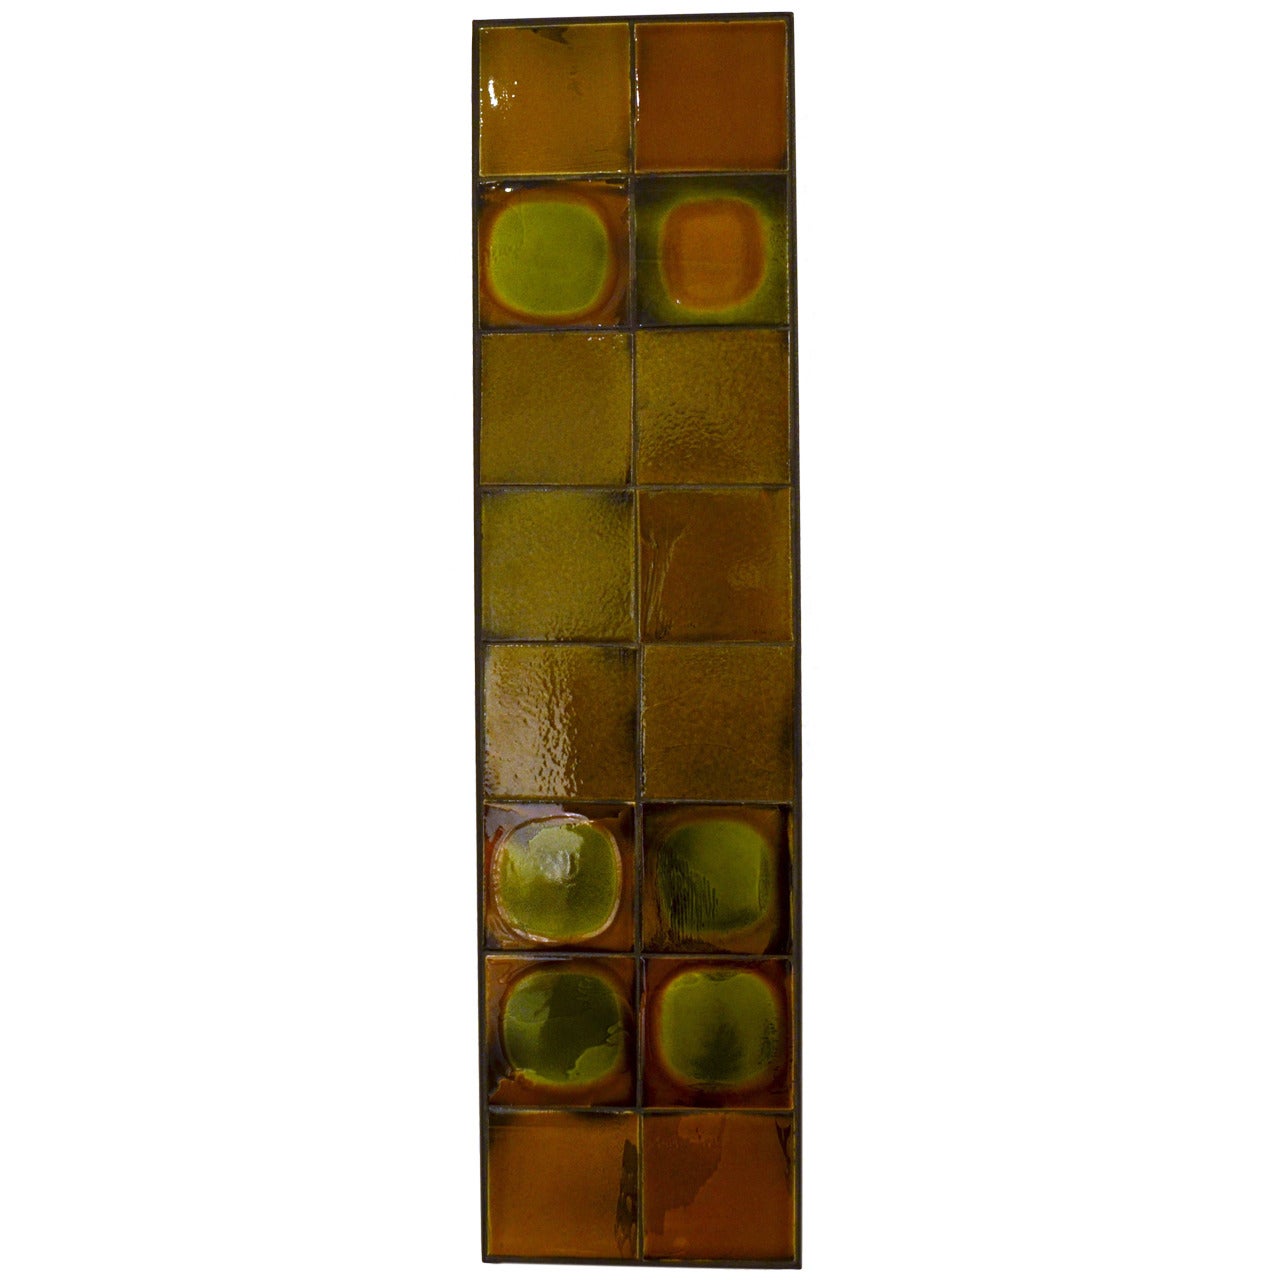 Roger Capron Tile Panel in a Metal Frame